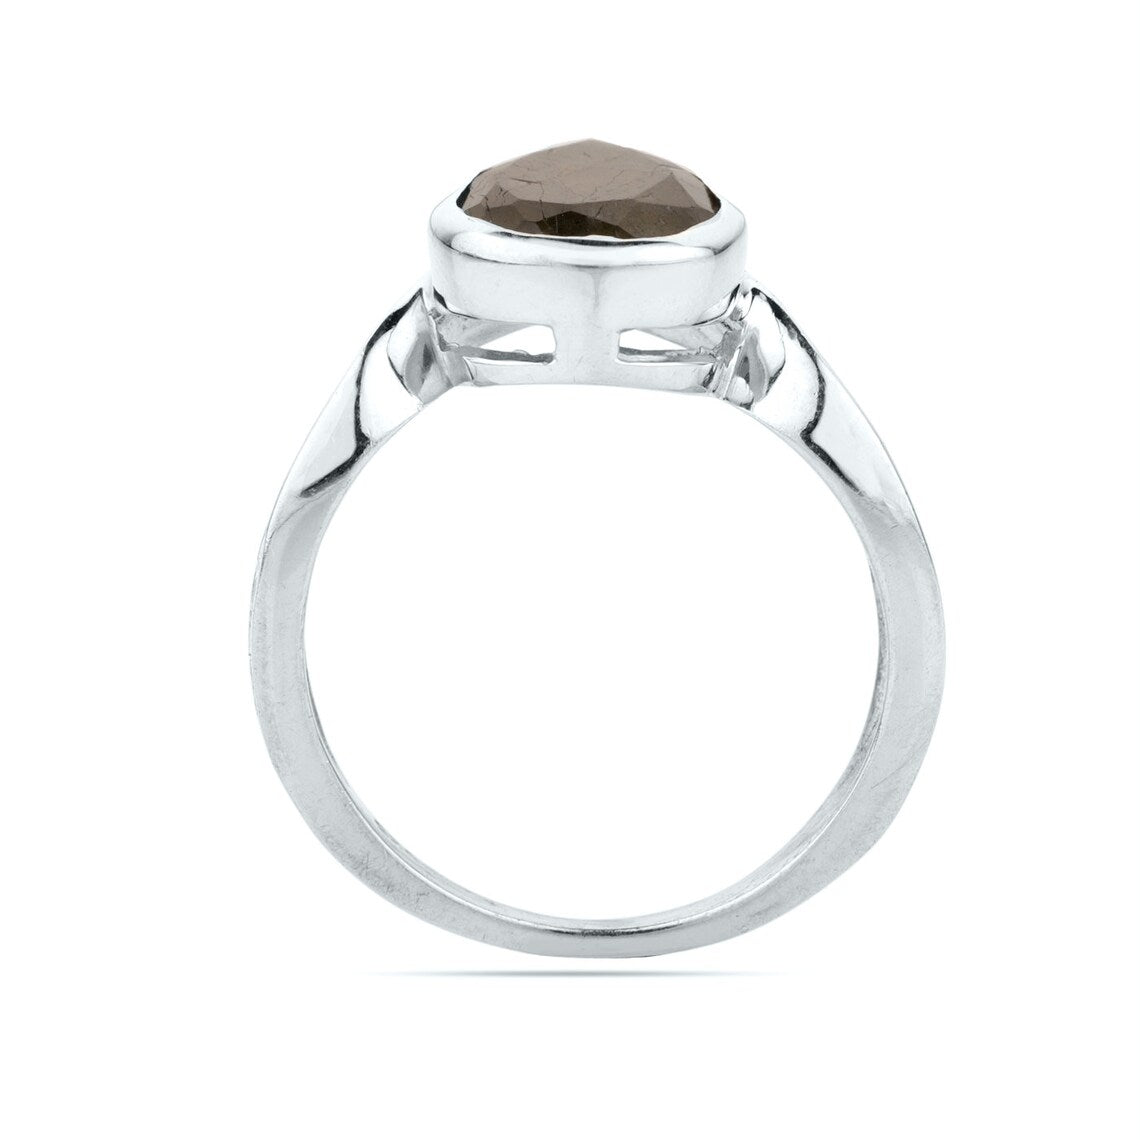 Labradorite Ring * Sterling Silver Ring * Statement Ring * Gemstone Ring * Labradorite * Bridal Ring * Wedding Ring * Organic Ring